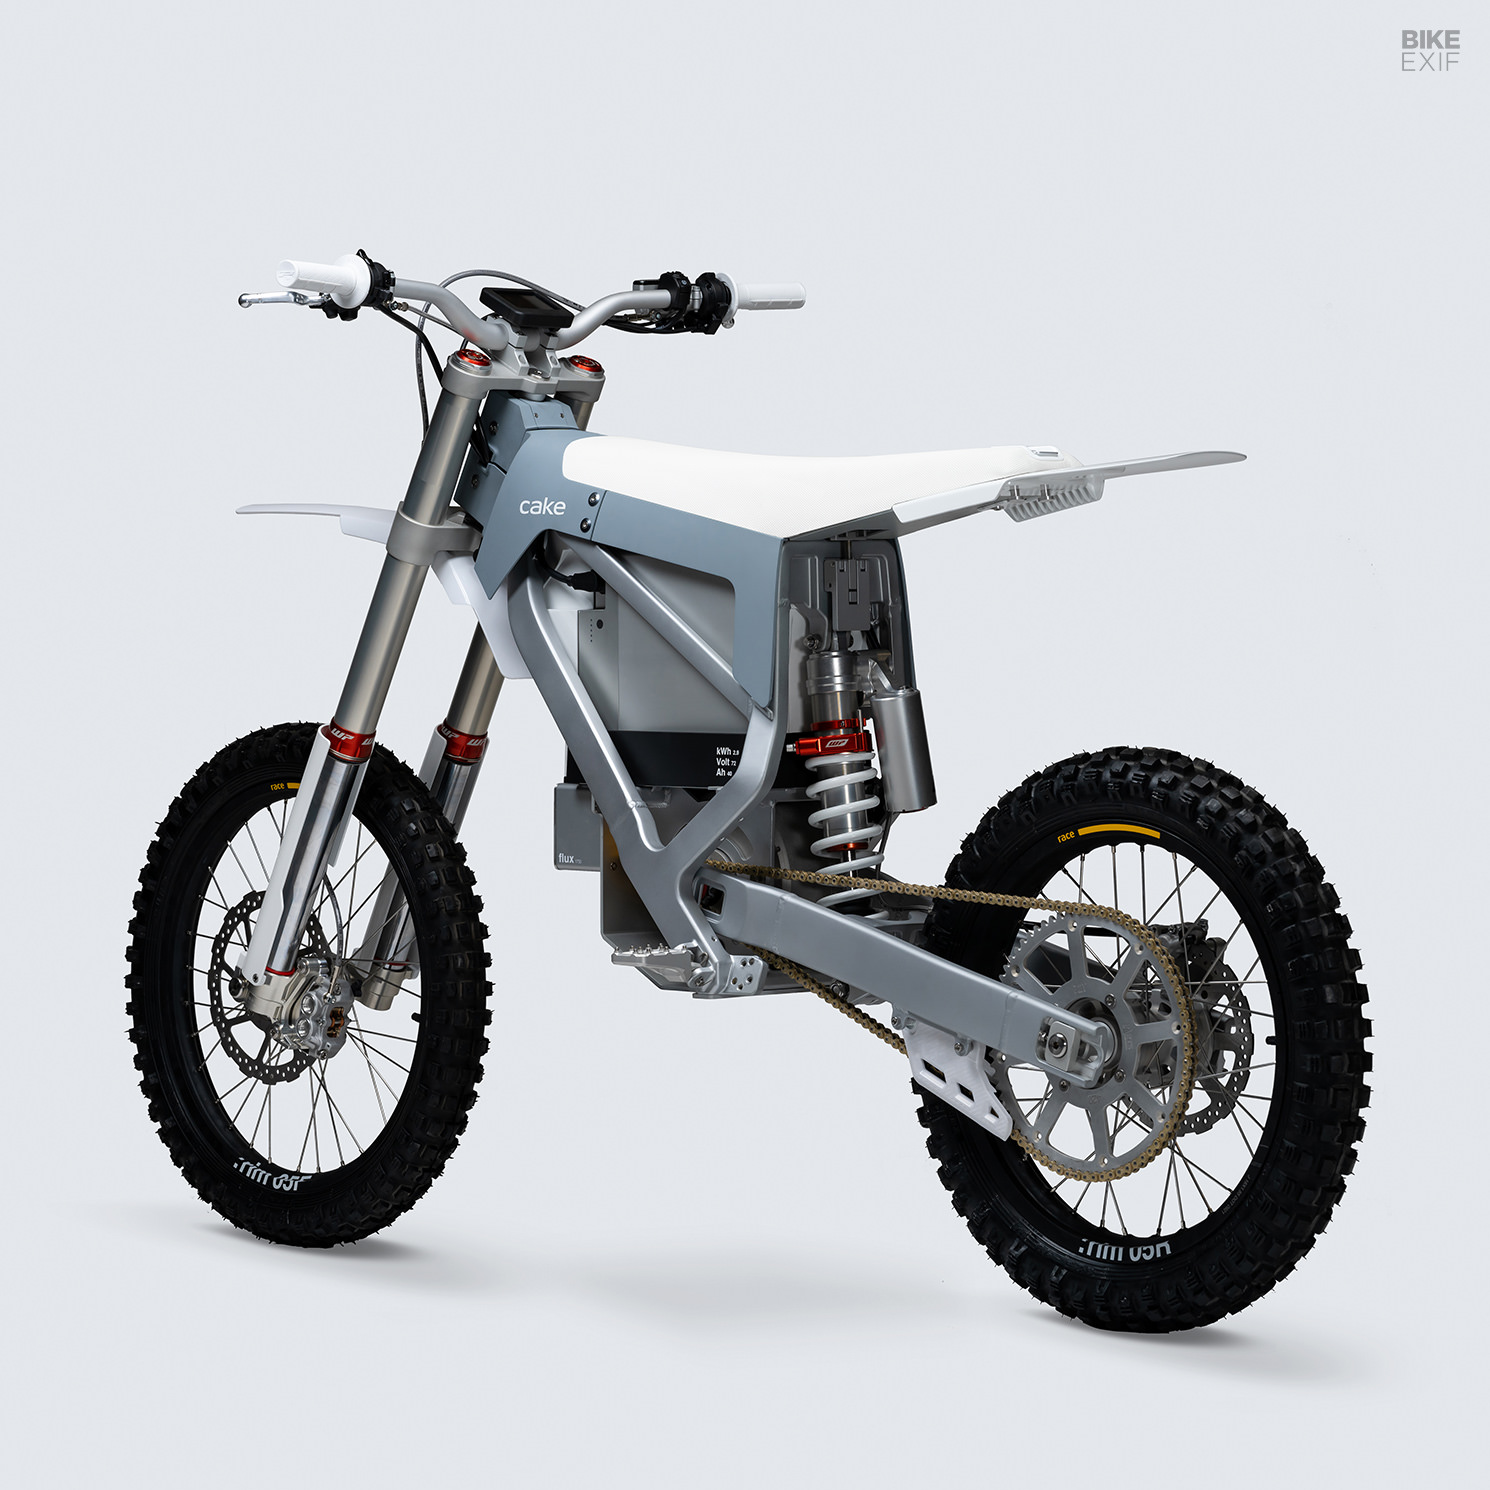 2023 Cake Bukk electric dirt bike